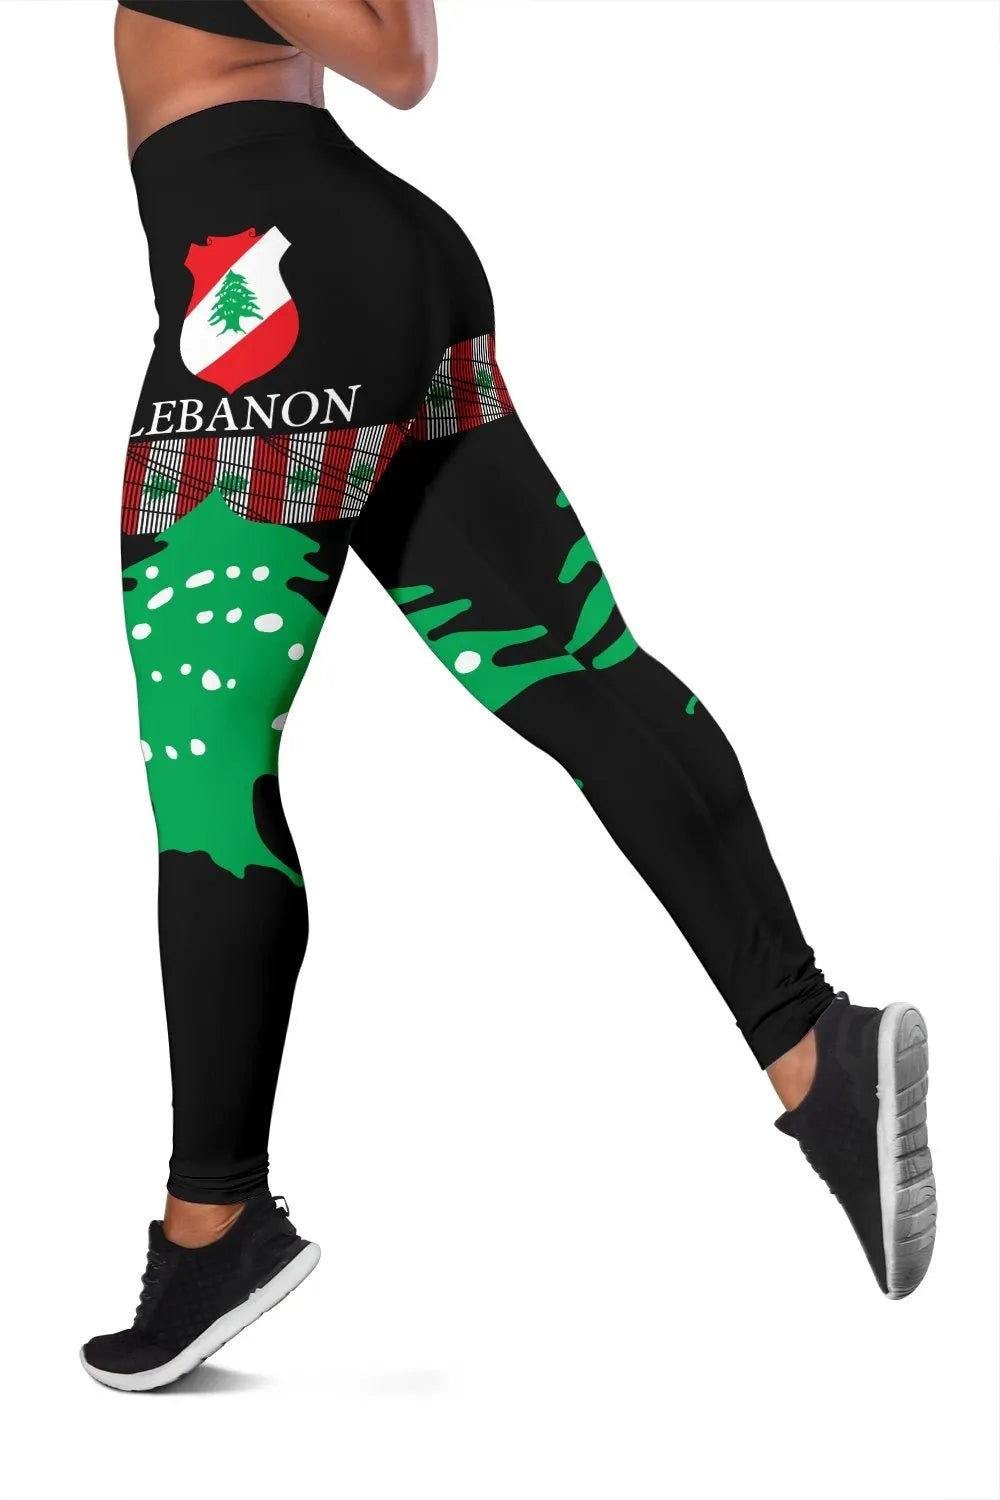 lebanon-united-womens-leggings